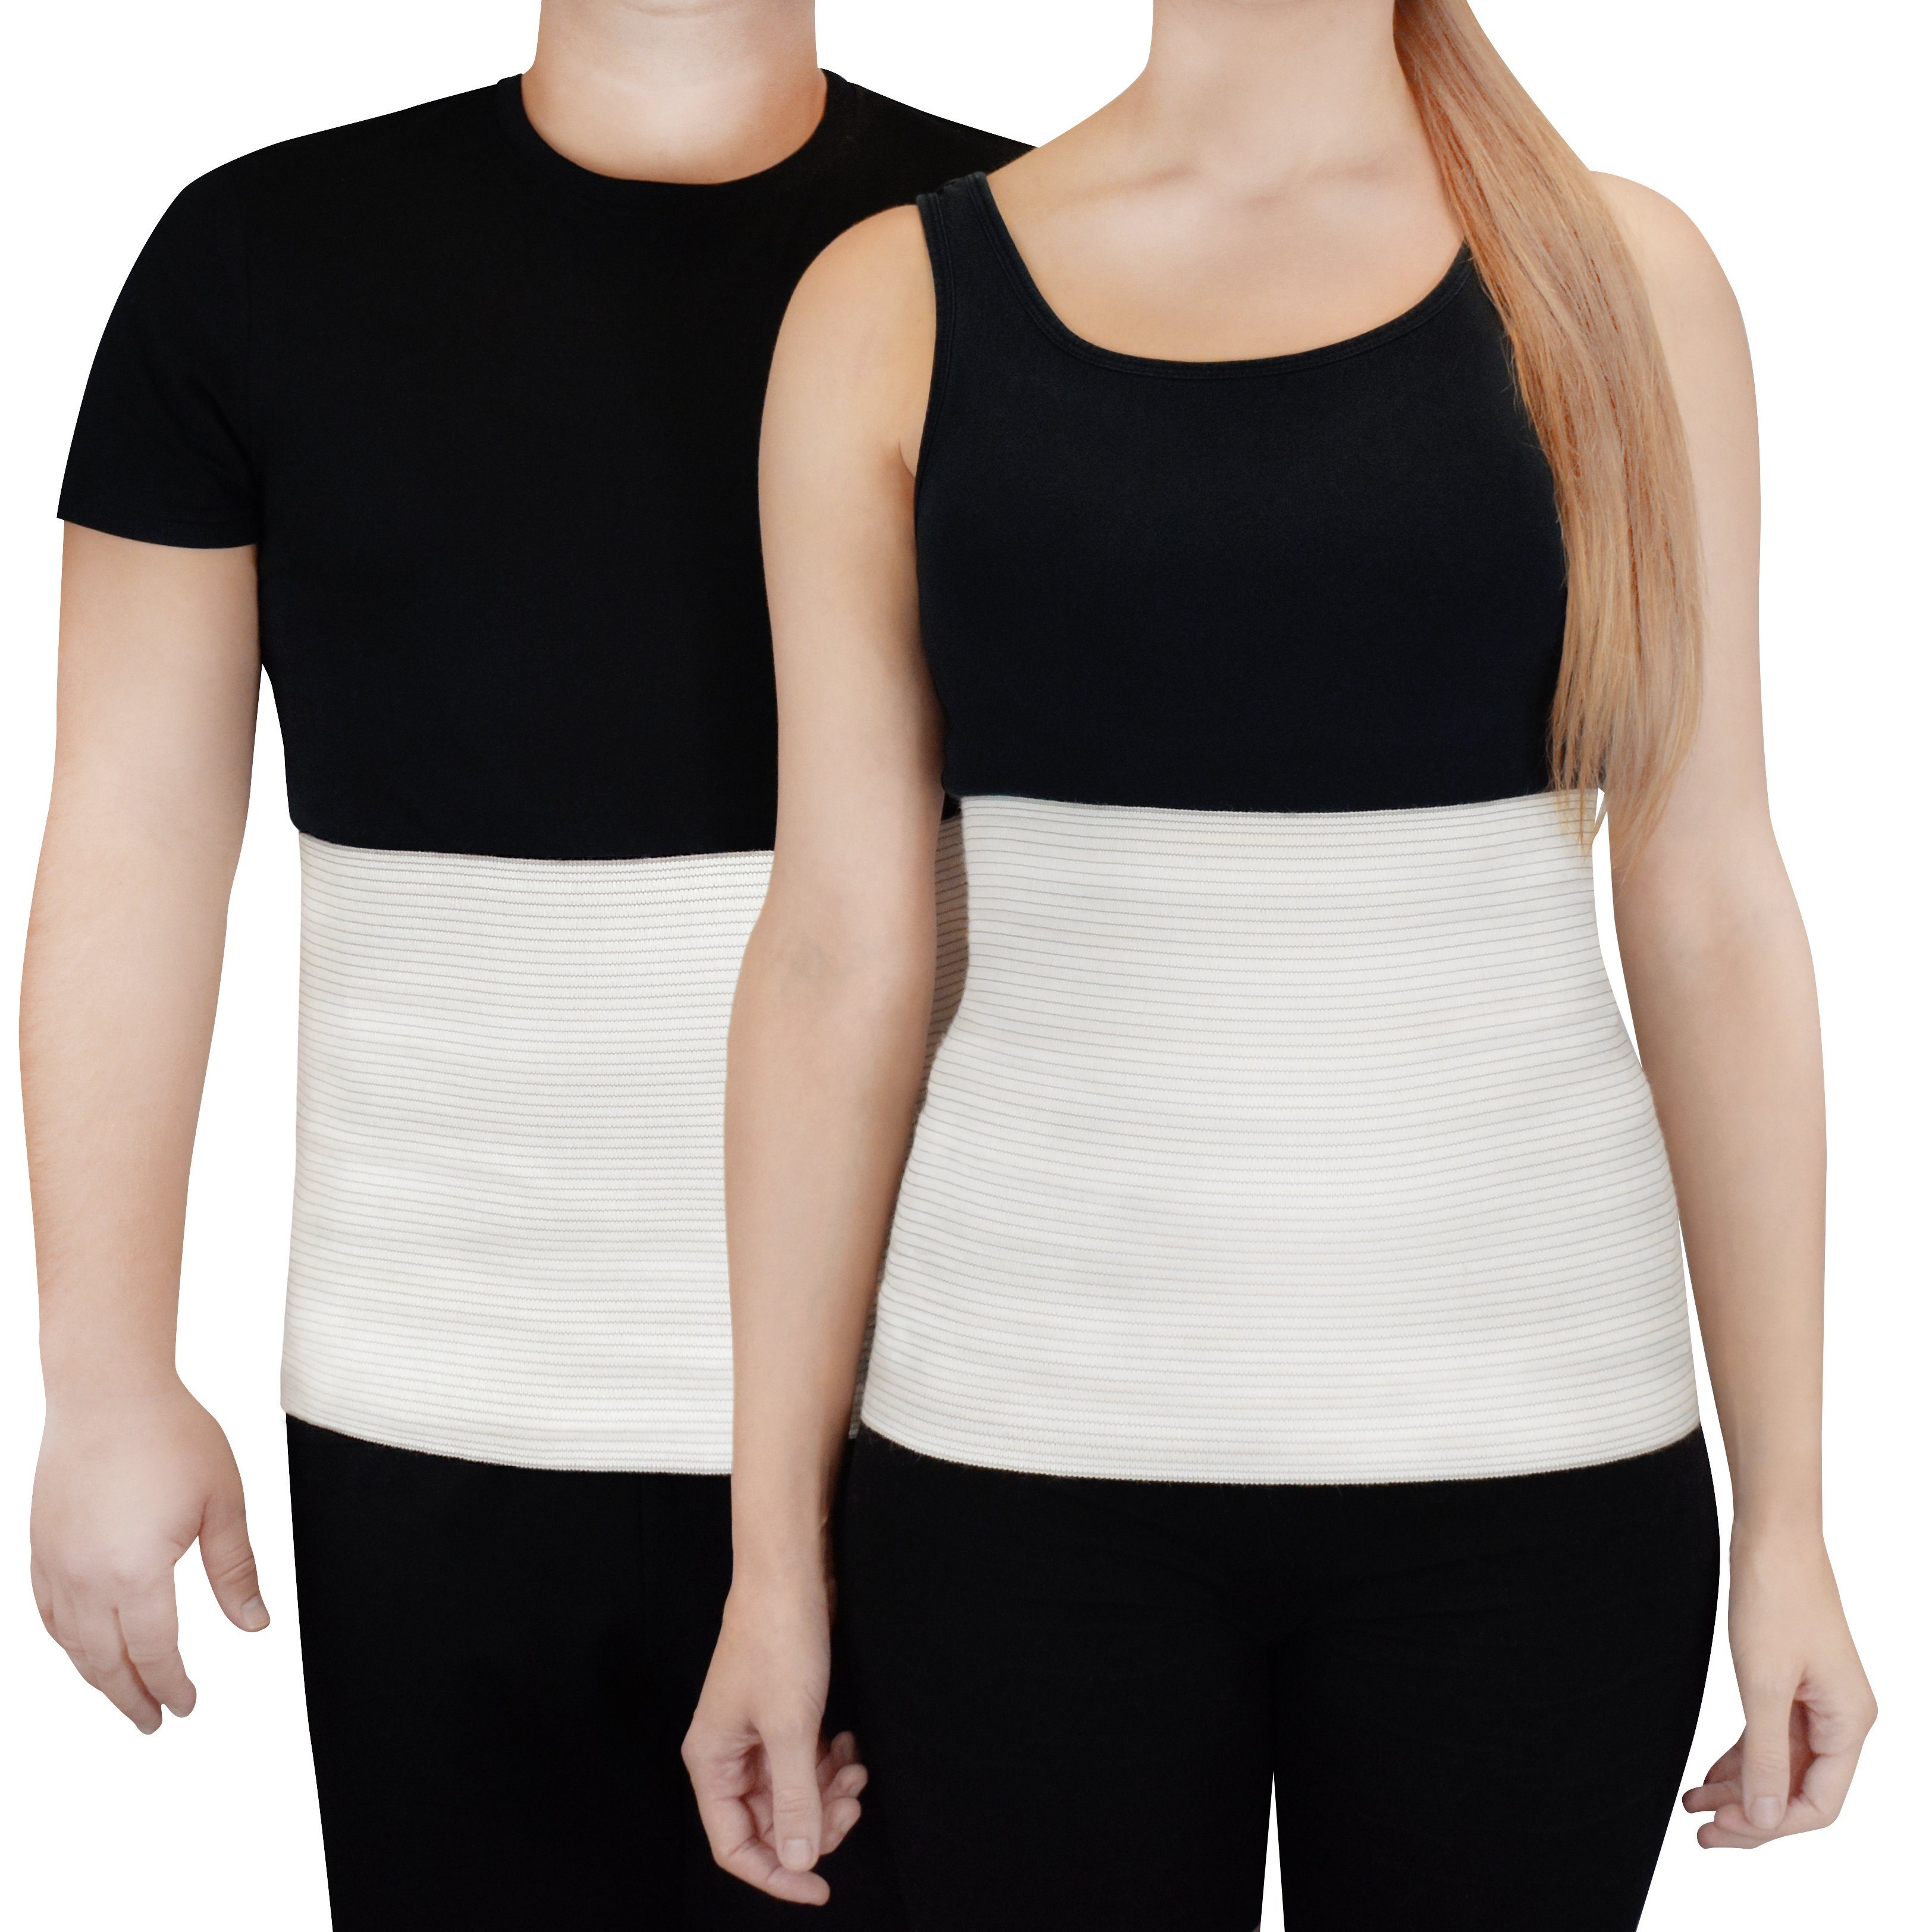 F&K-Mode Rückenbandage Rückenwärmer Wärme-Gürtel Wolle Merino AMG7, erwärmend